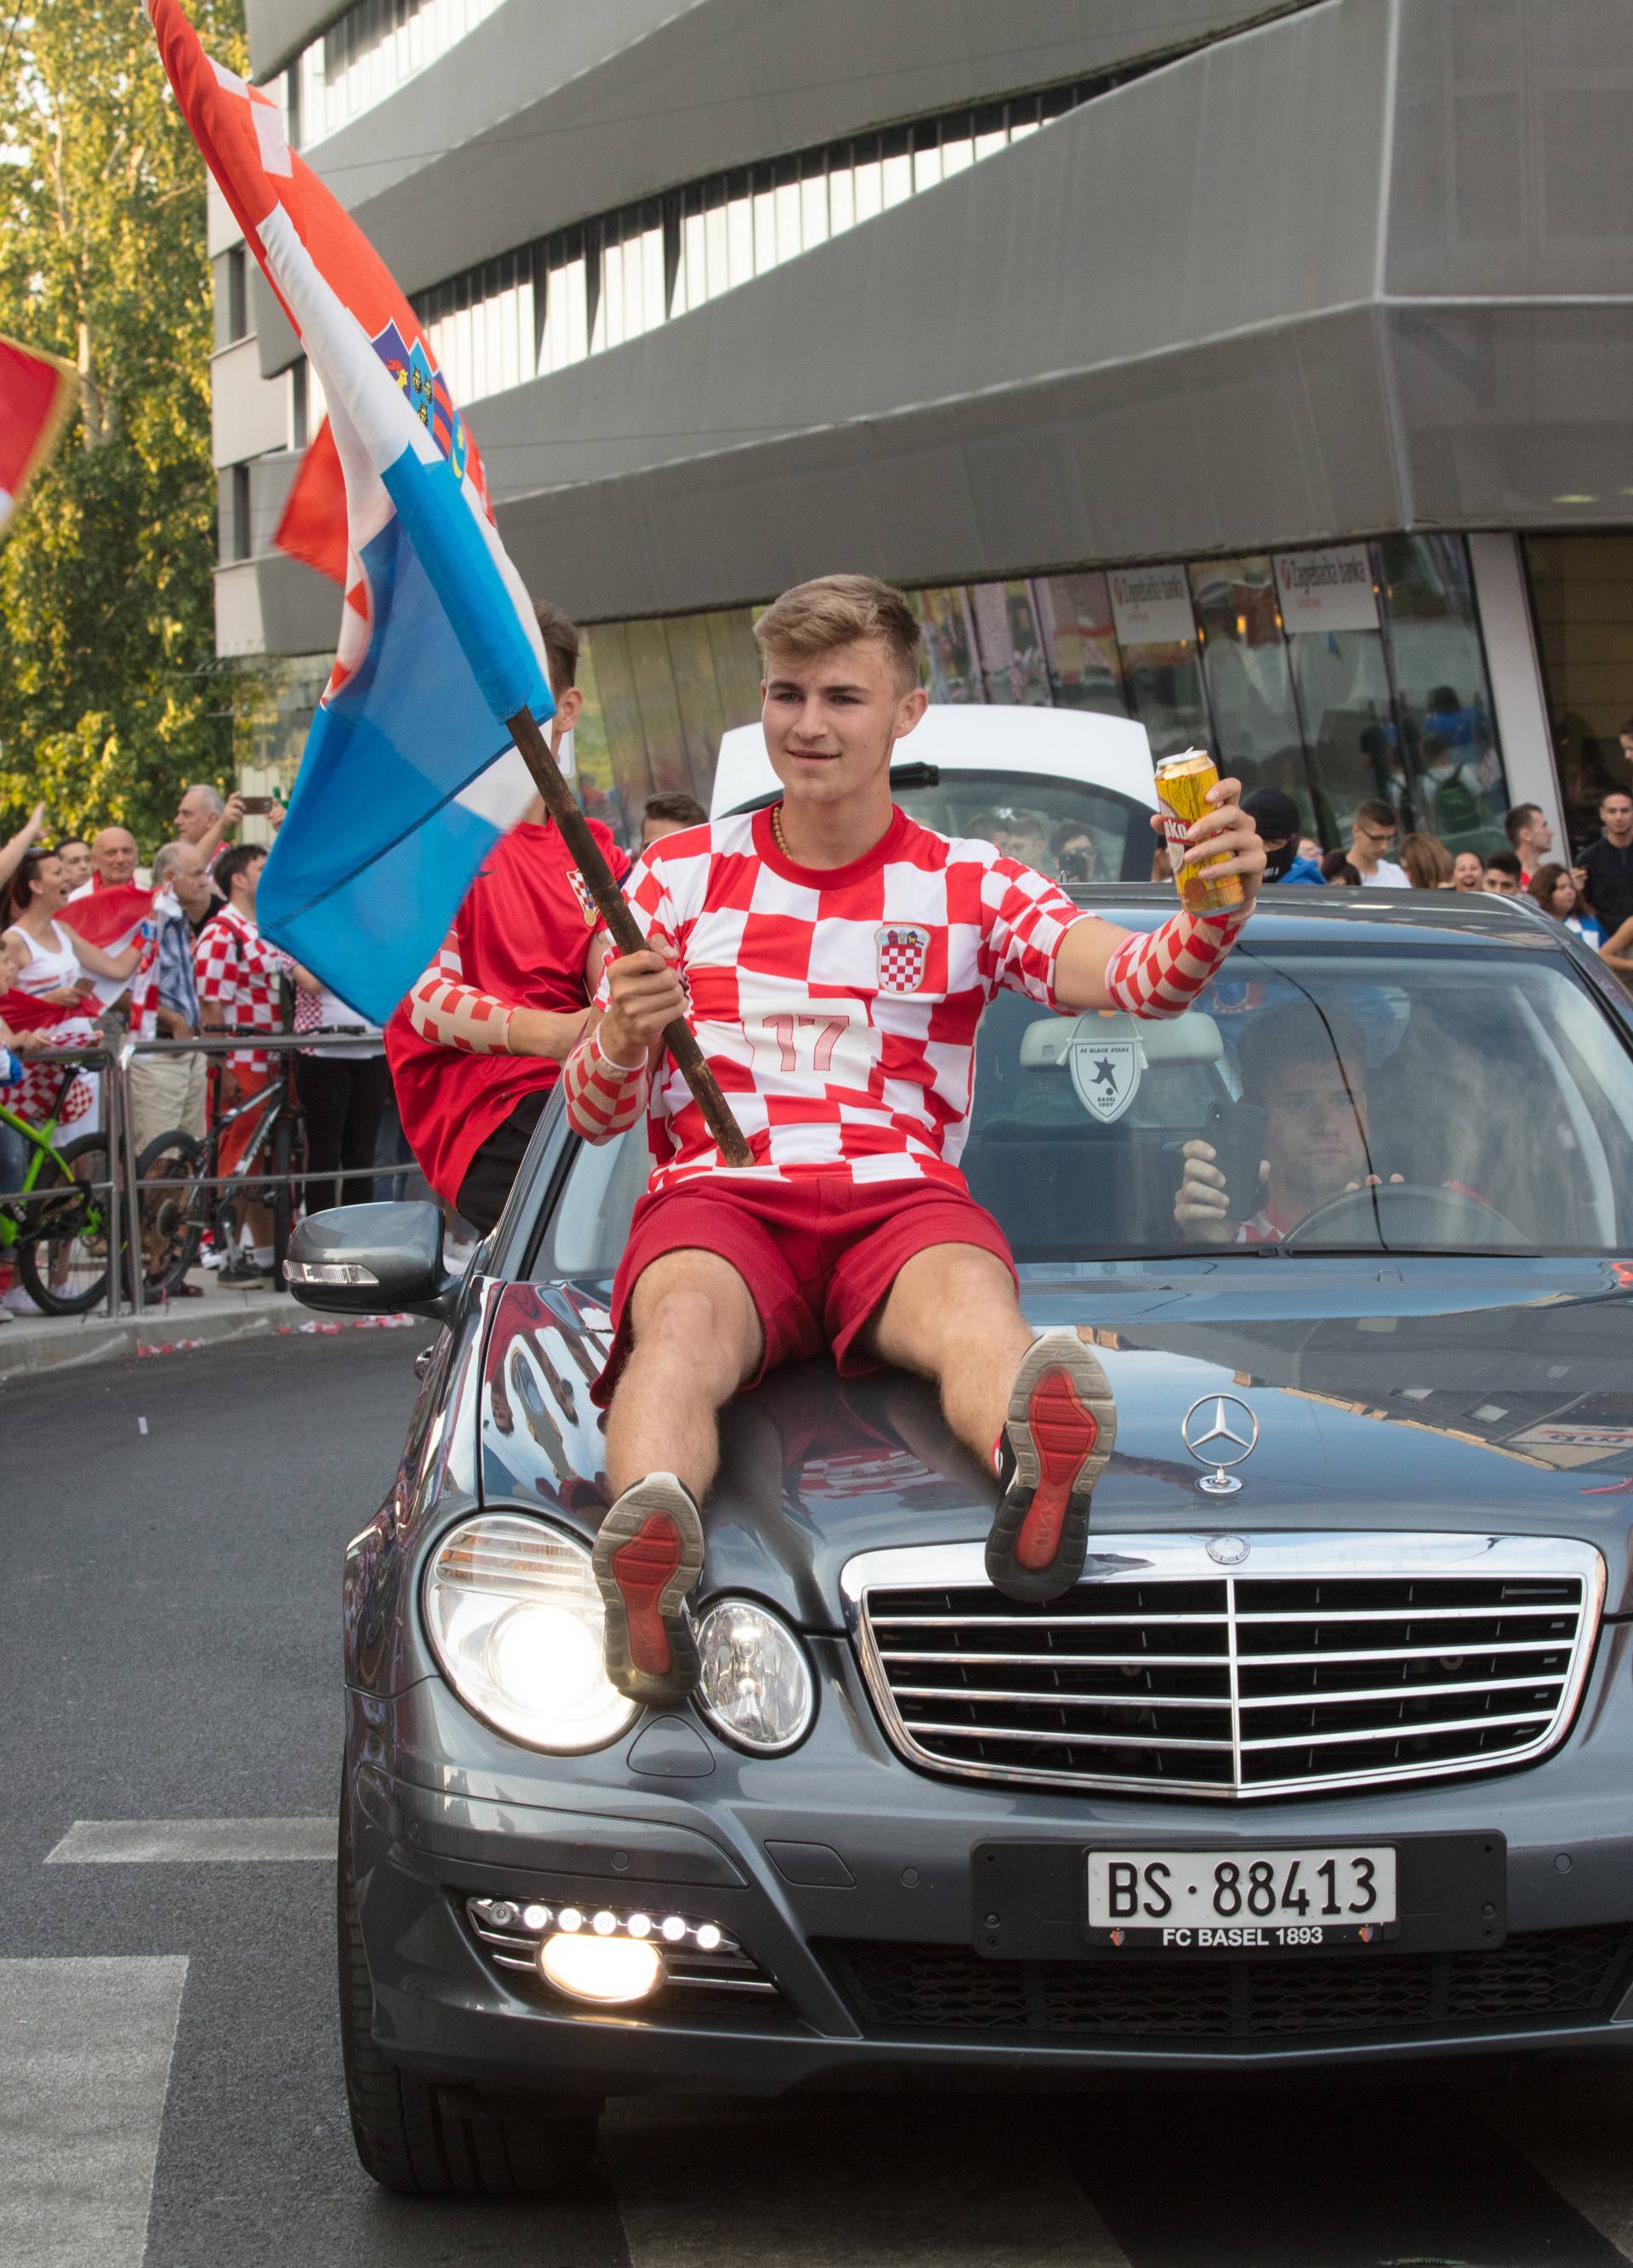 Ponos i suze diljem Hrvatske: 'Ma vi ste za nas ipak prvaci!'